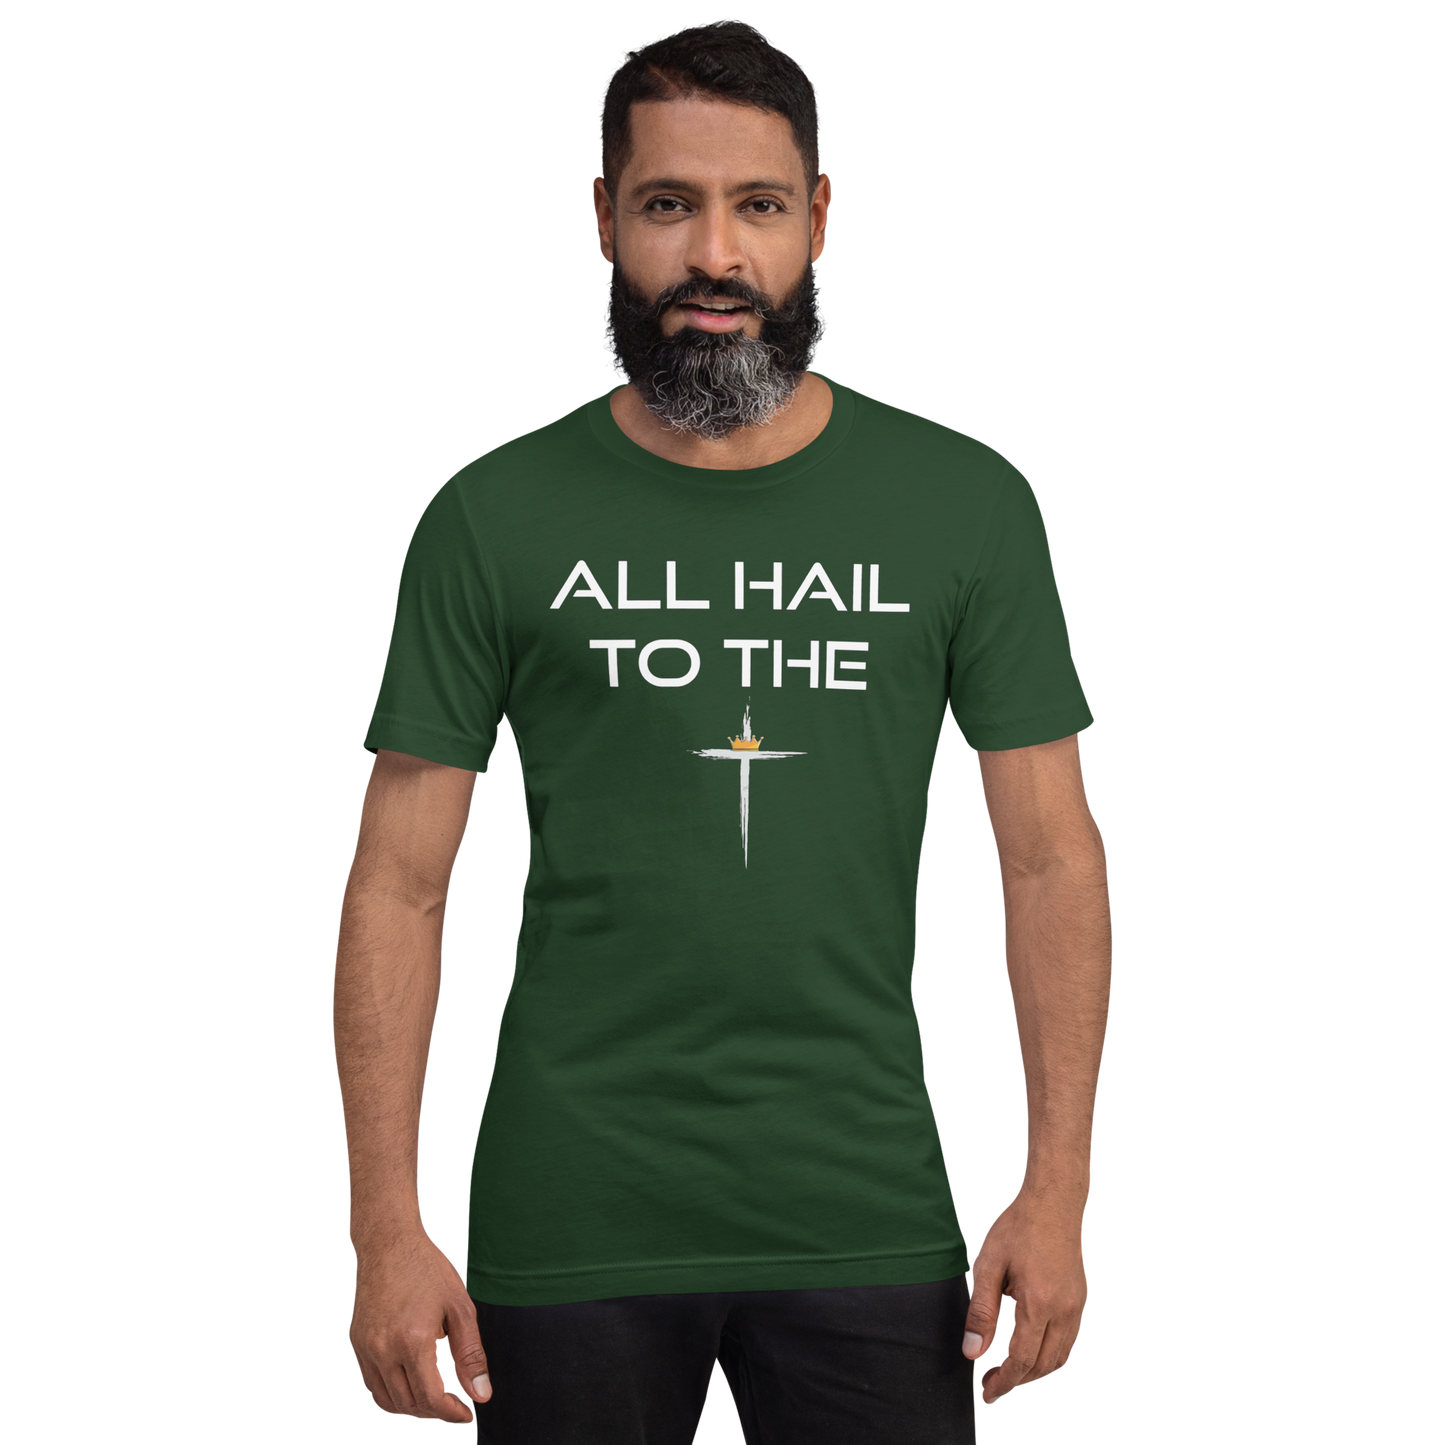 All Hail to the King Men's/Unisex T-shirt